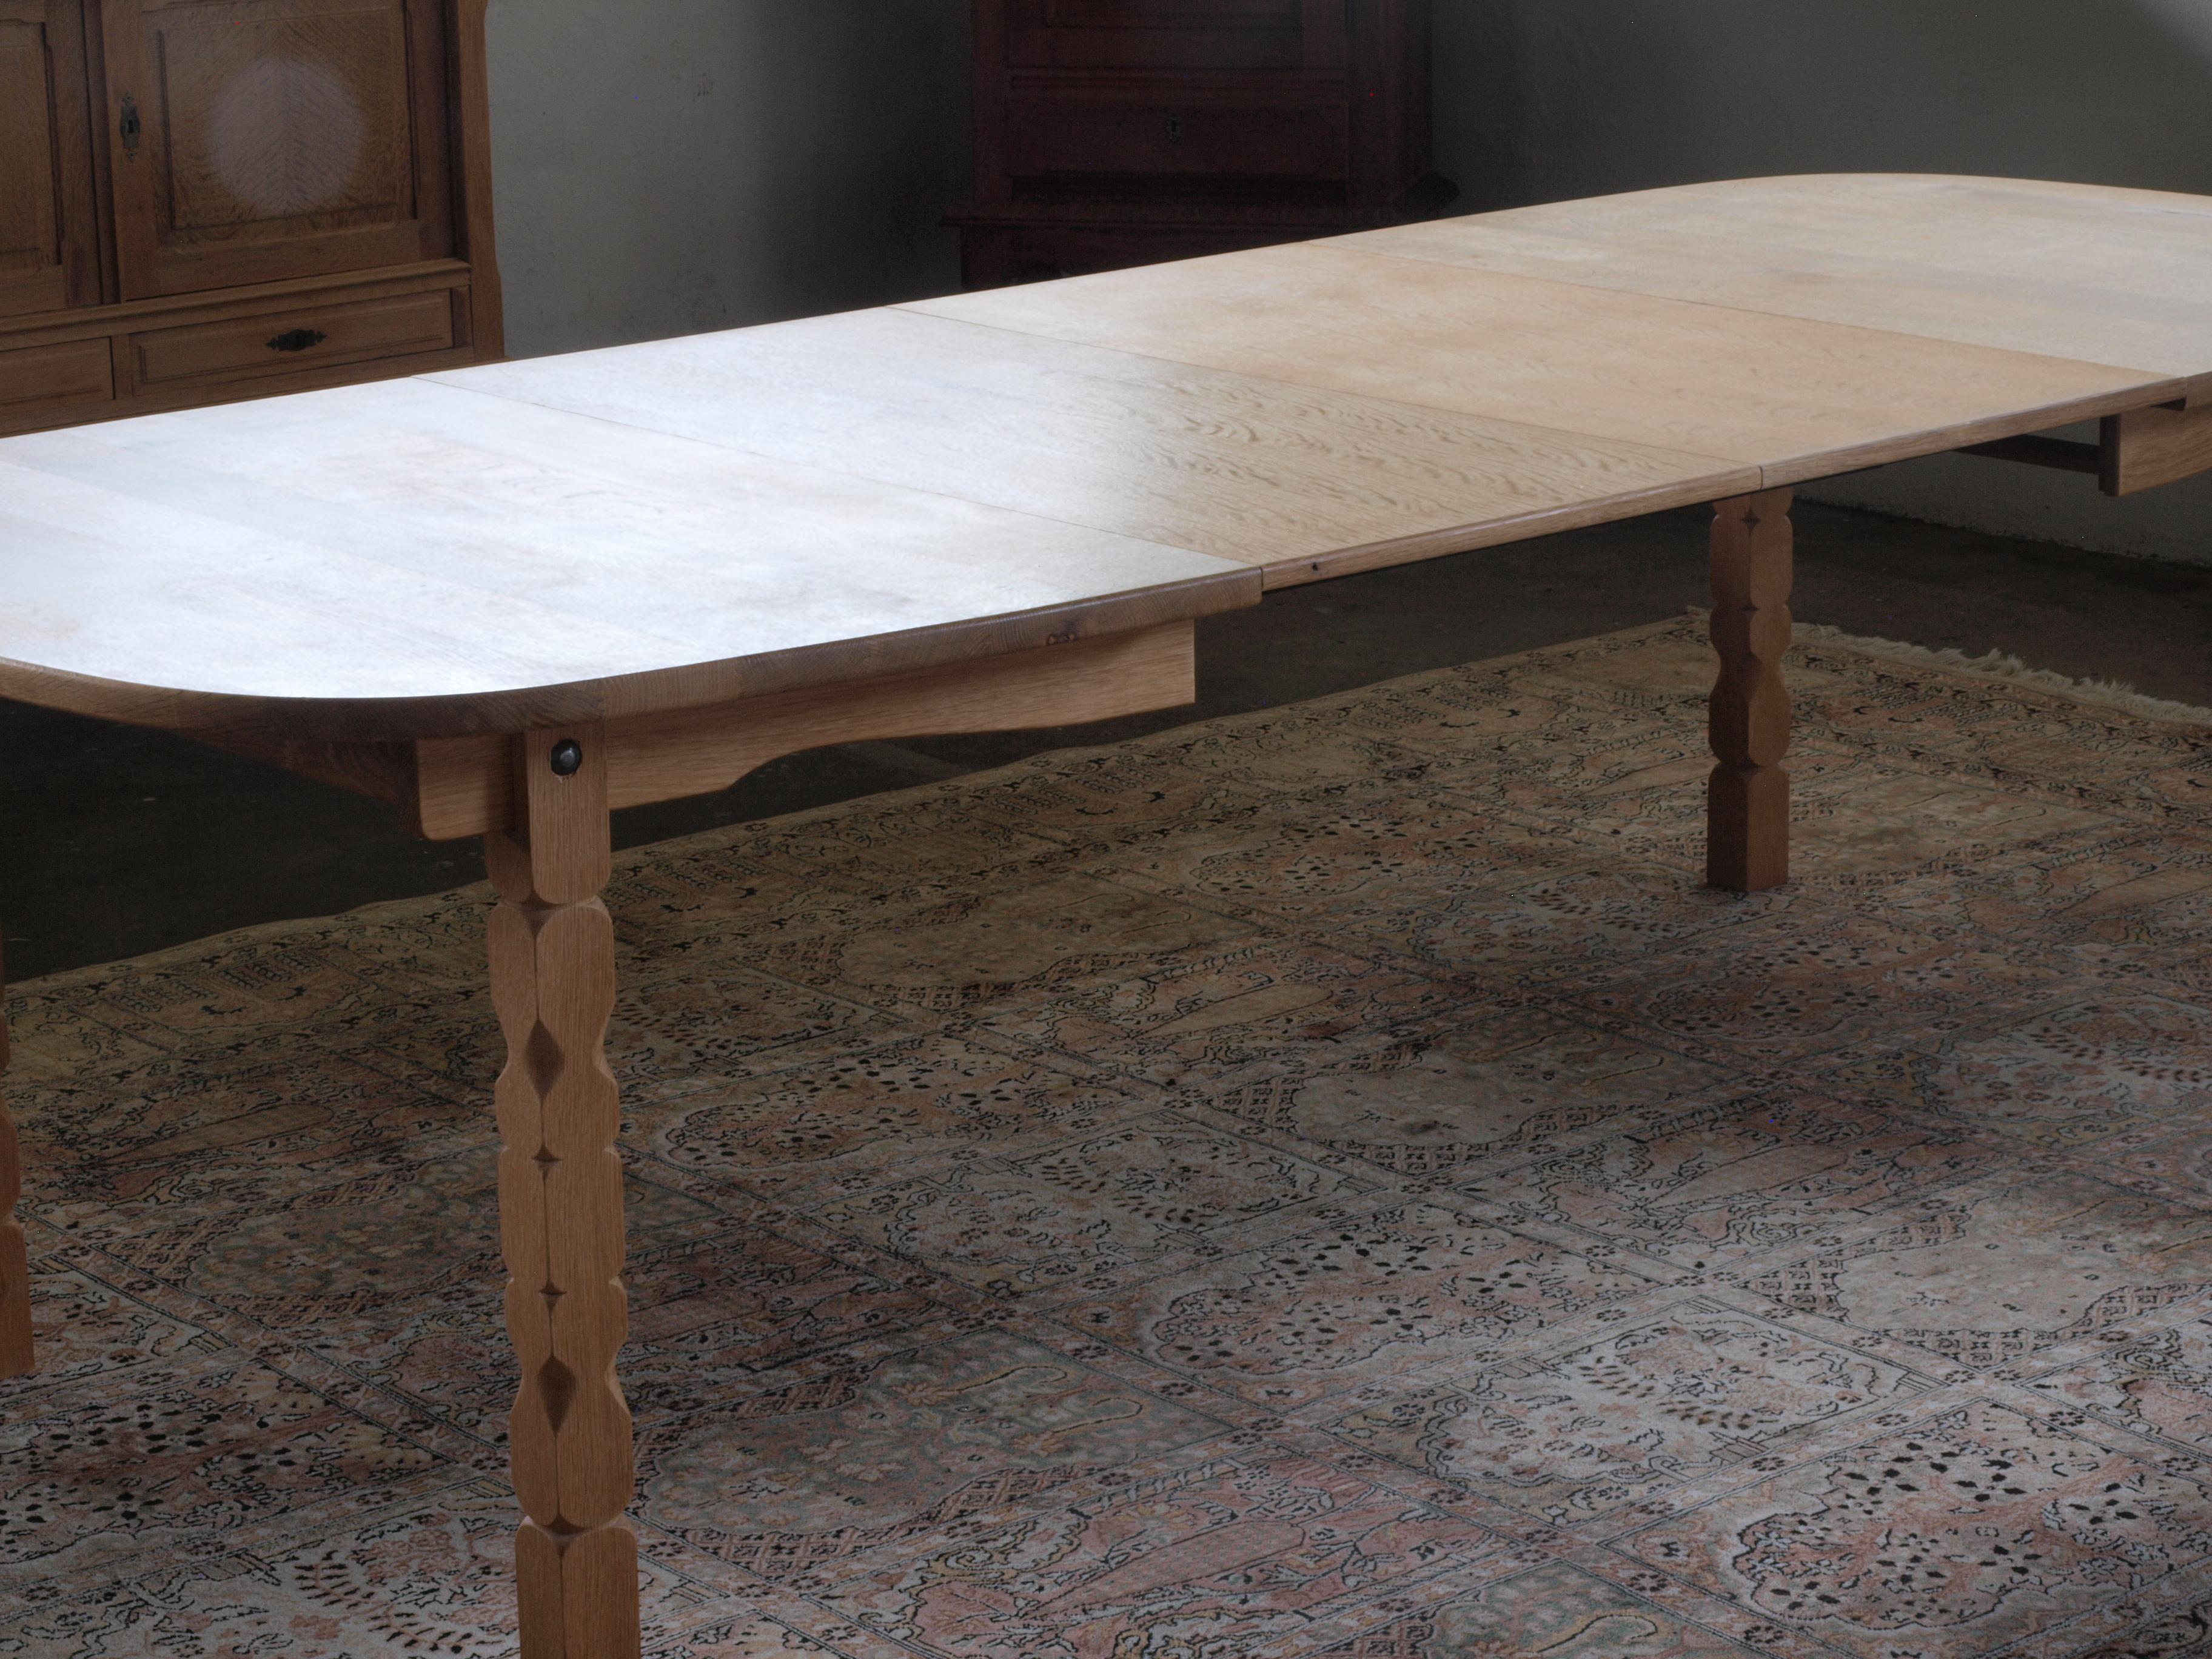 Dieser Tisch aus Eichenholz im Vintage-Stil verkörpert die Essenz von Kjaernulfs Möbeldesign. Seine brutalistische Ästhetik, die durch die filigranen Schnitzereien an den Beinen unterstrichen wird, wird durch seine abgerundete Form wunderbar